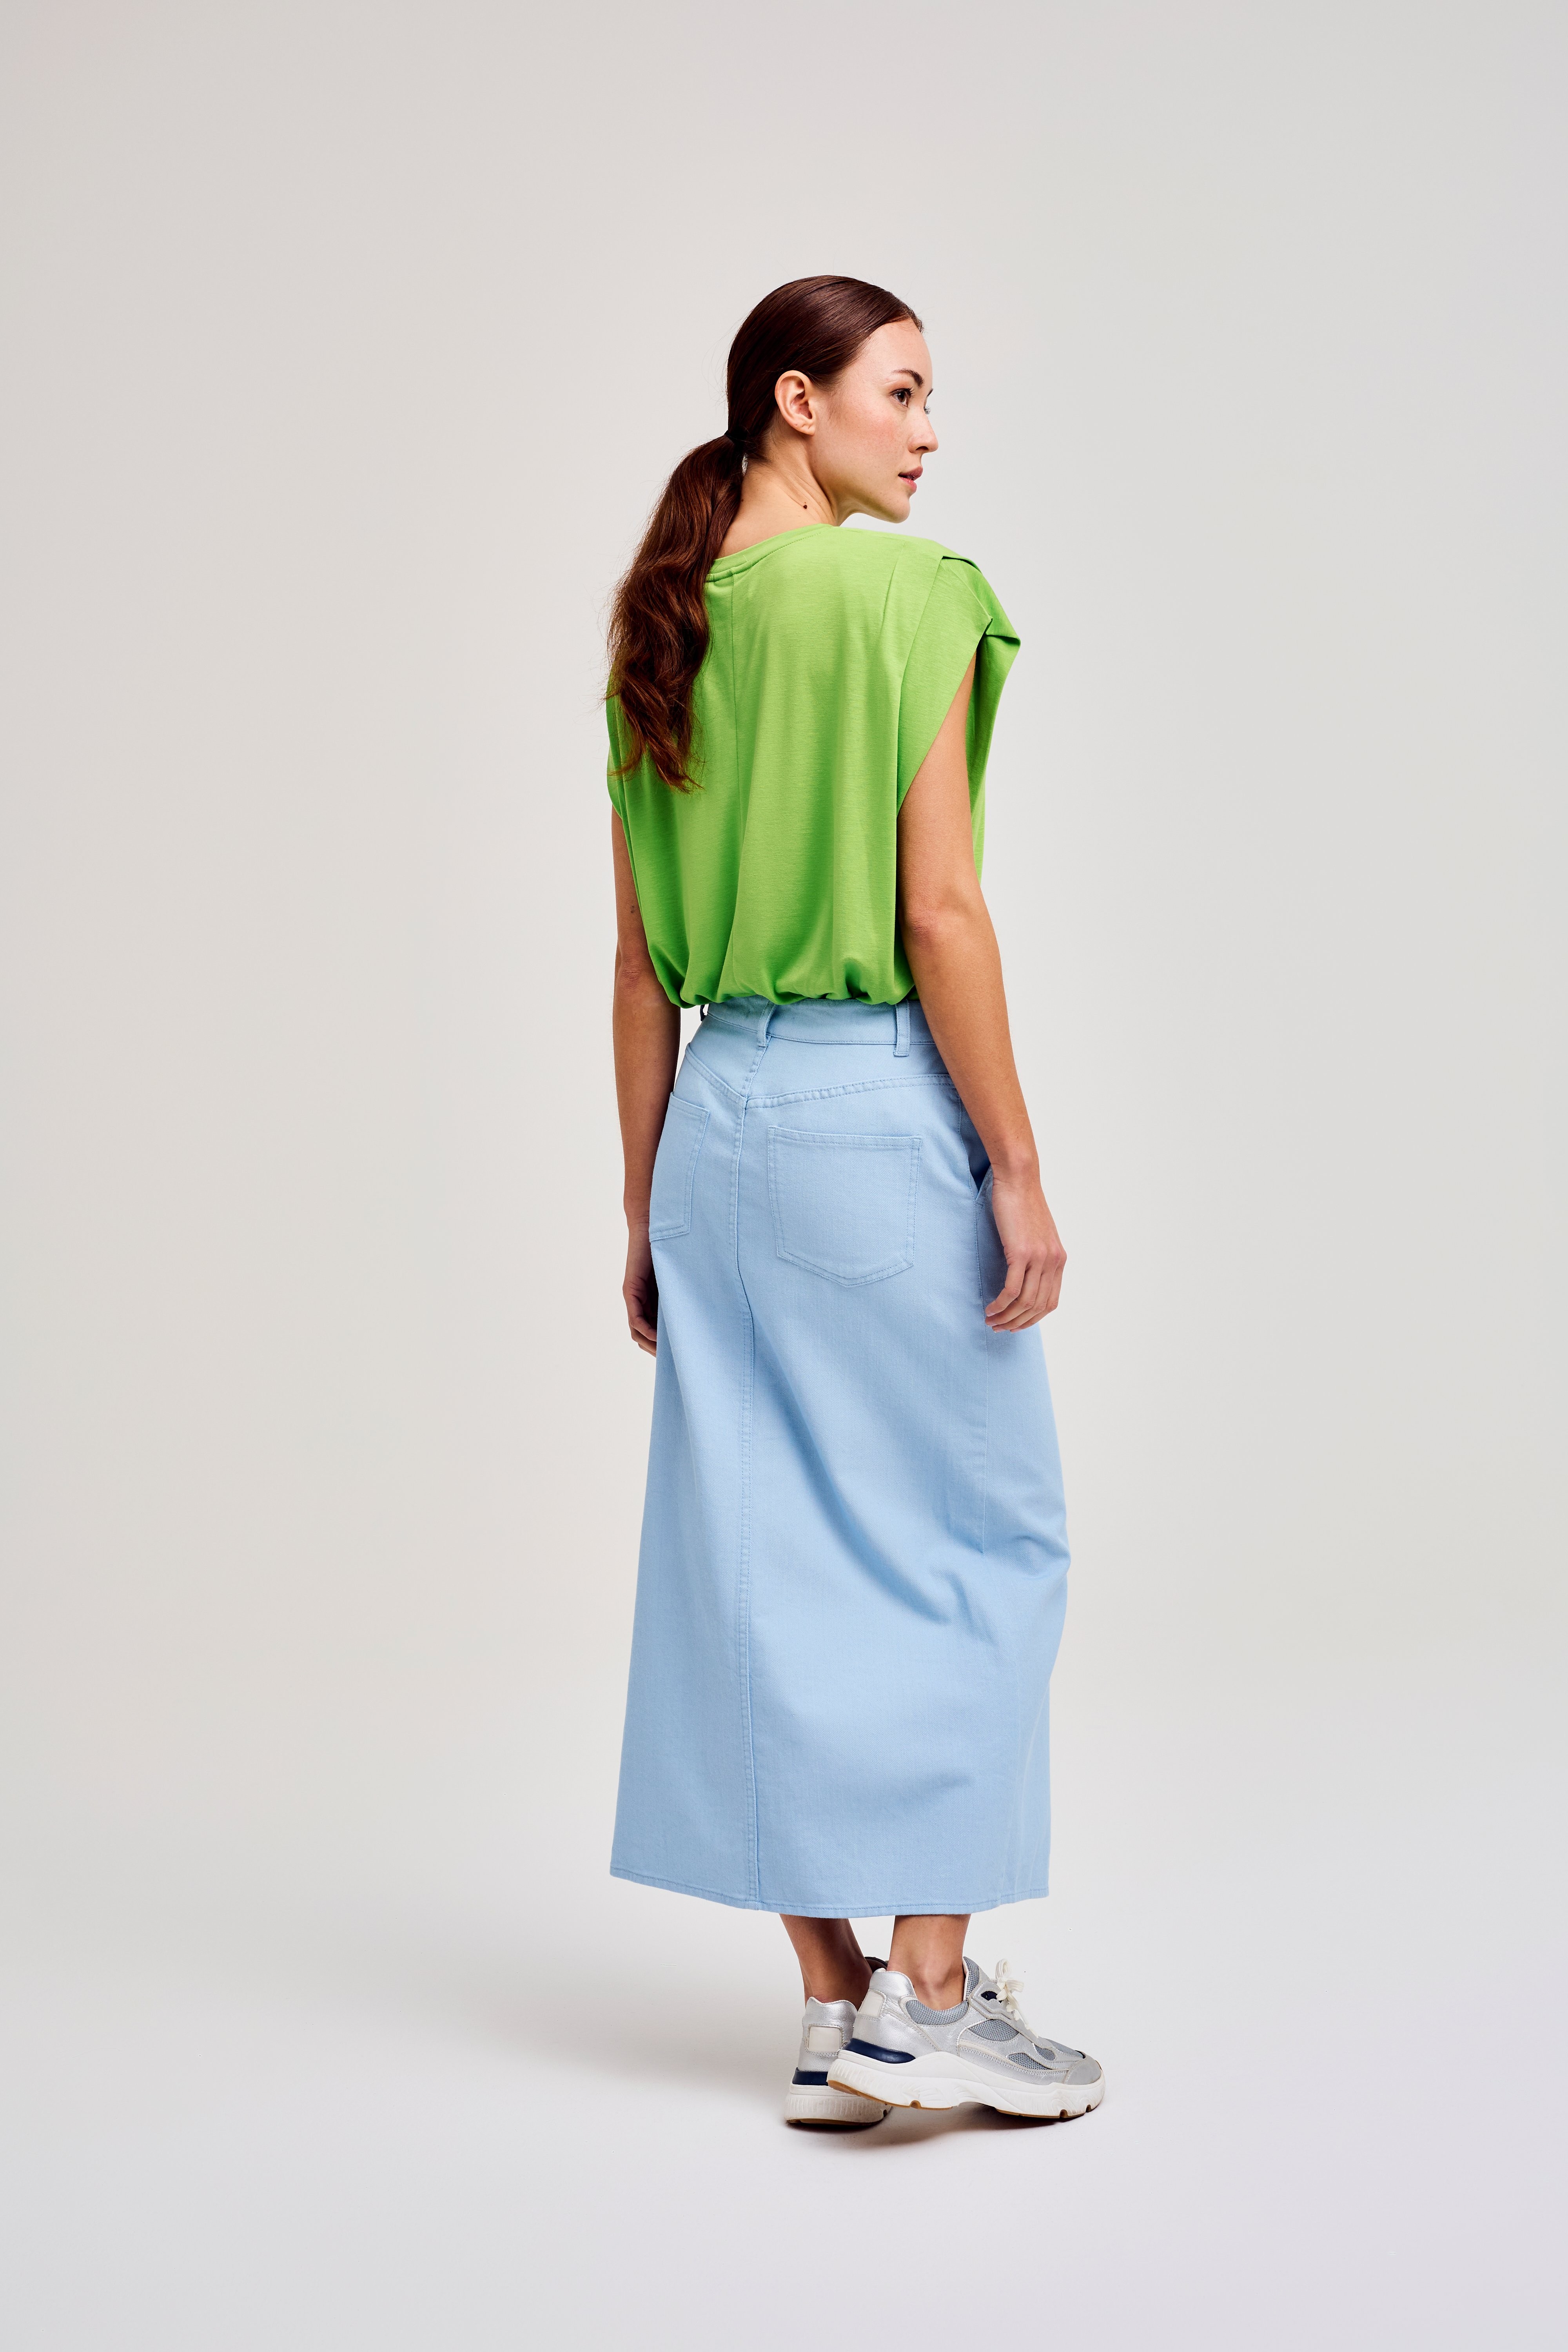 CKS Dames - SKILLS - midi skirt - light blue